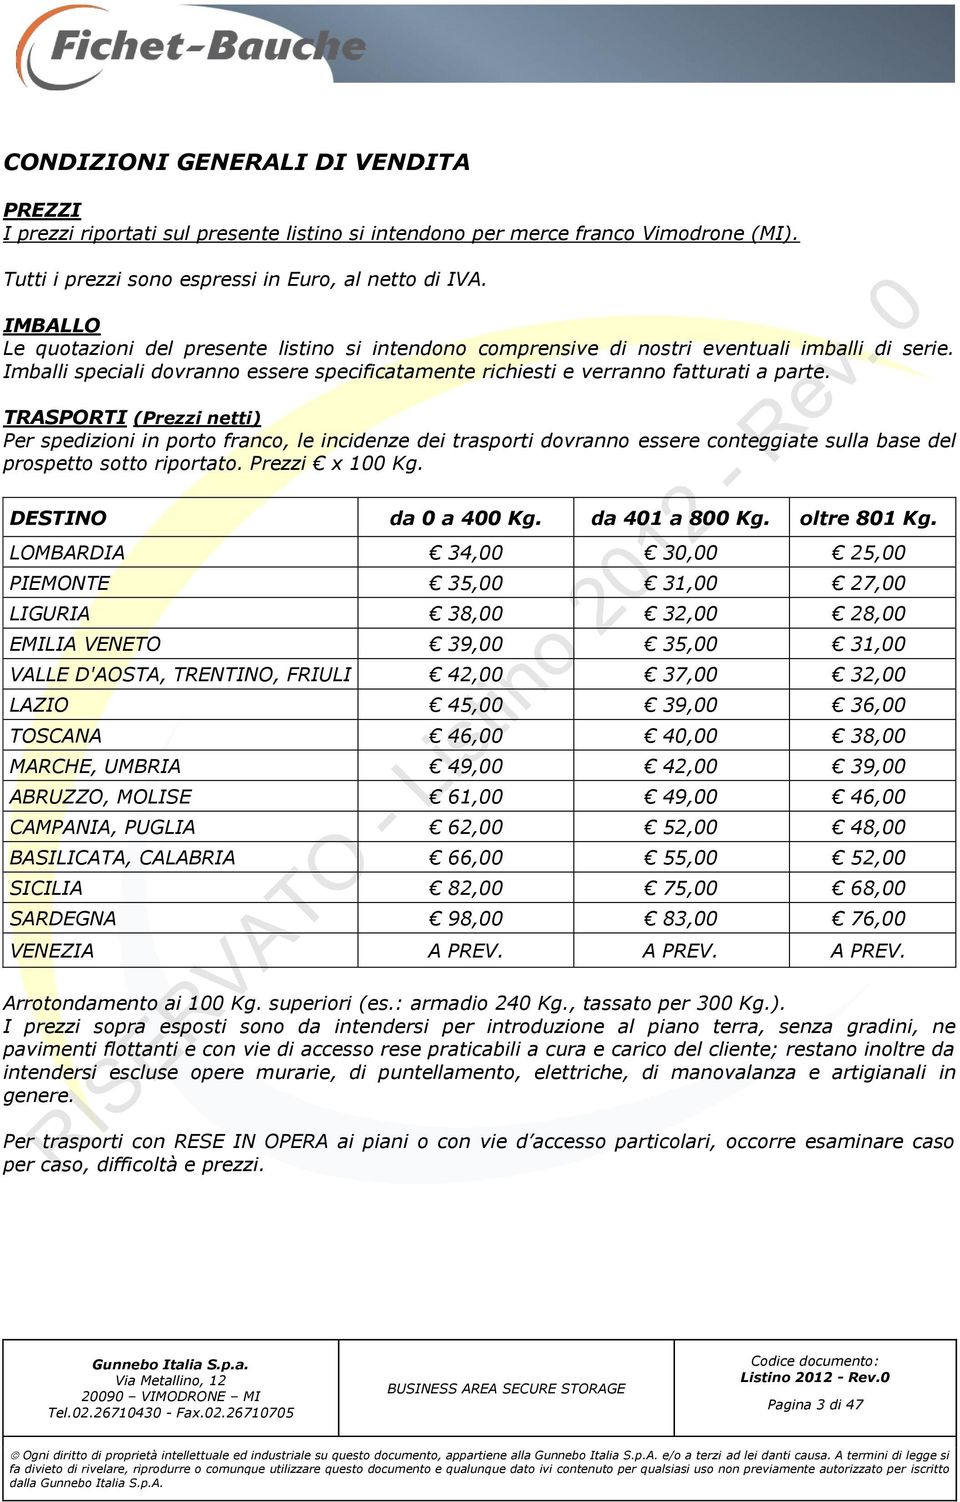 TRASPORTI (Prezzi netti) Per spedizioni in porto franco, le incidenze dei trasporti dovranno essere conteggiate sulla base del prospetto sotto riportato. Prezzi x 100 Kg. DESTINO da 0 a 400 Kg.